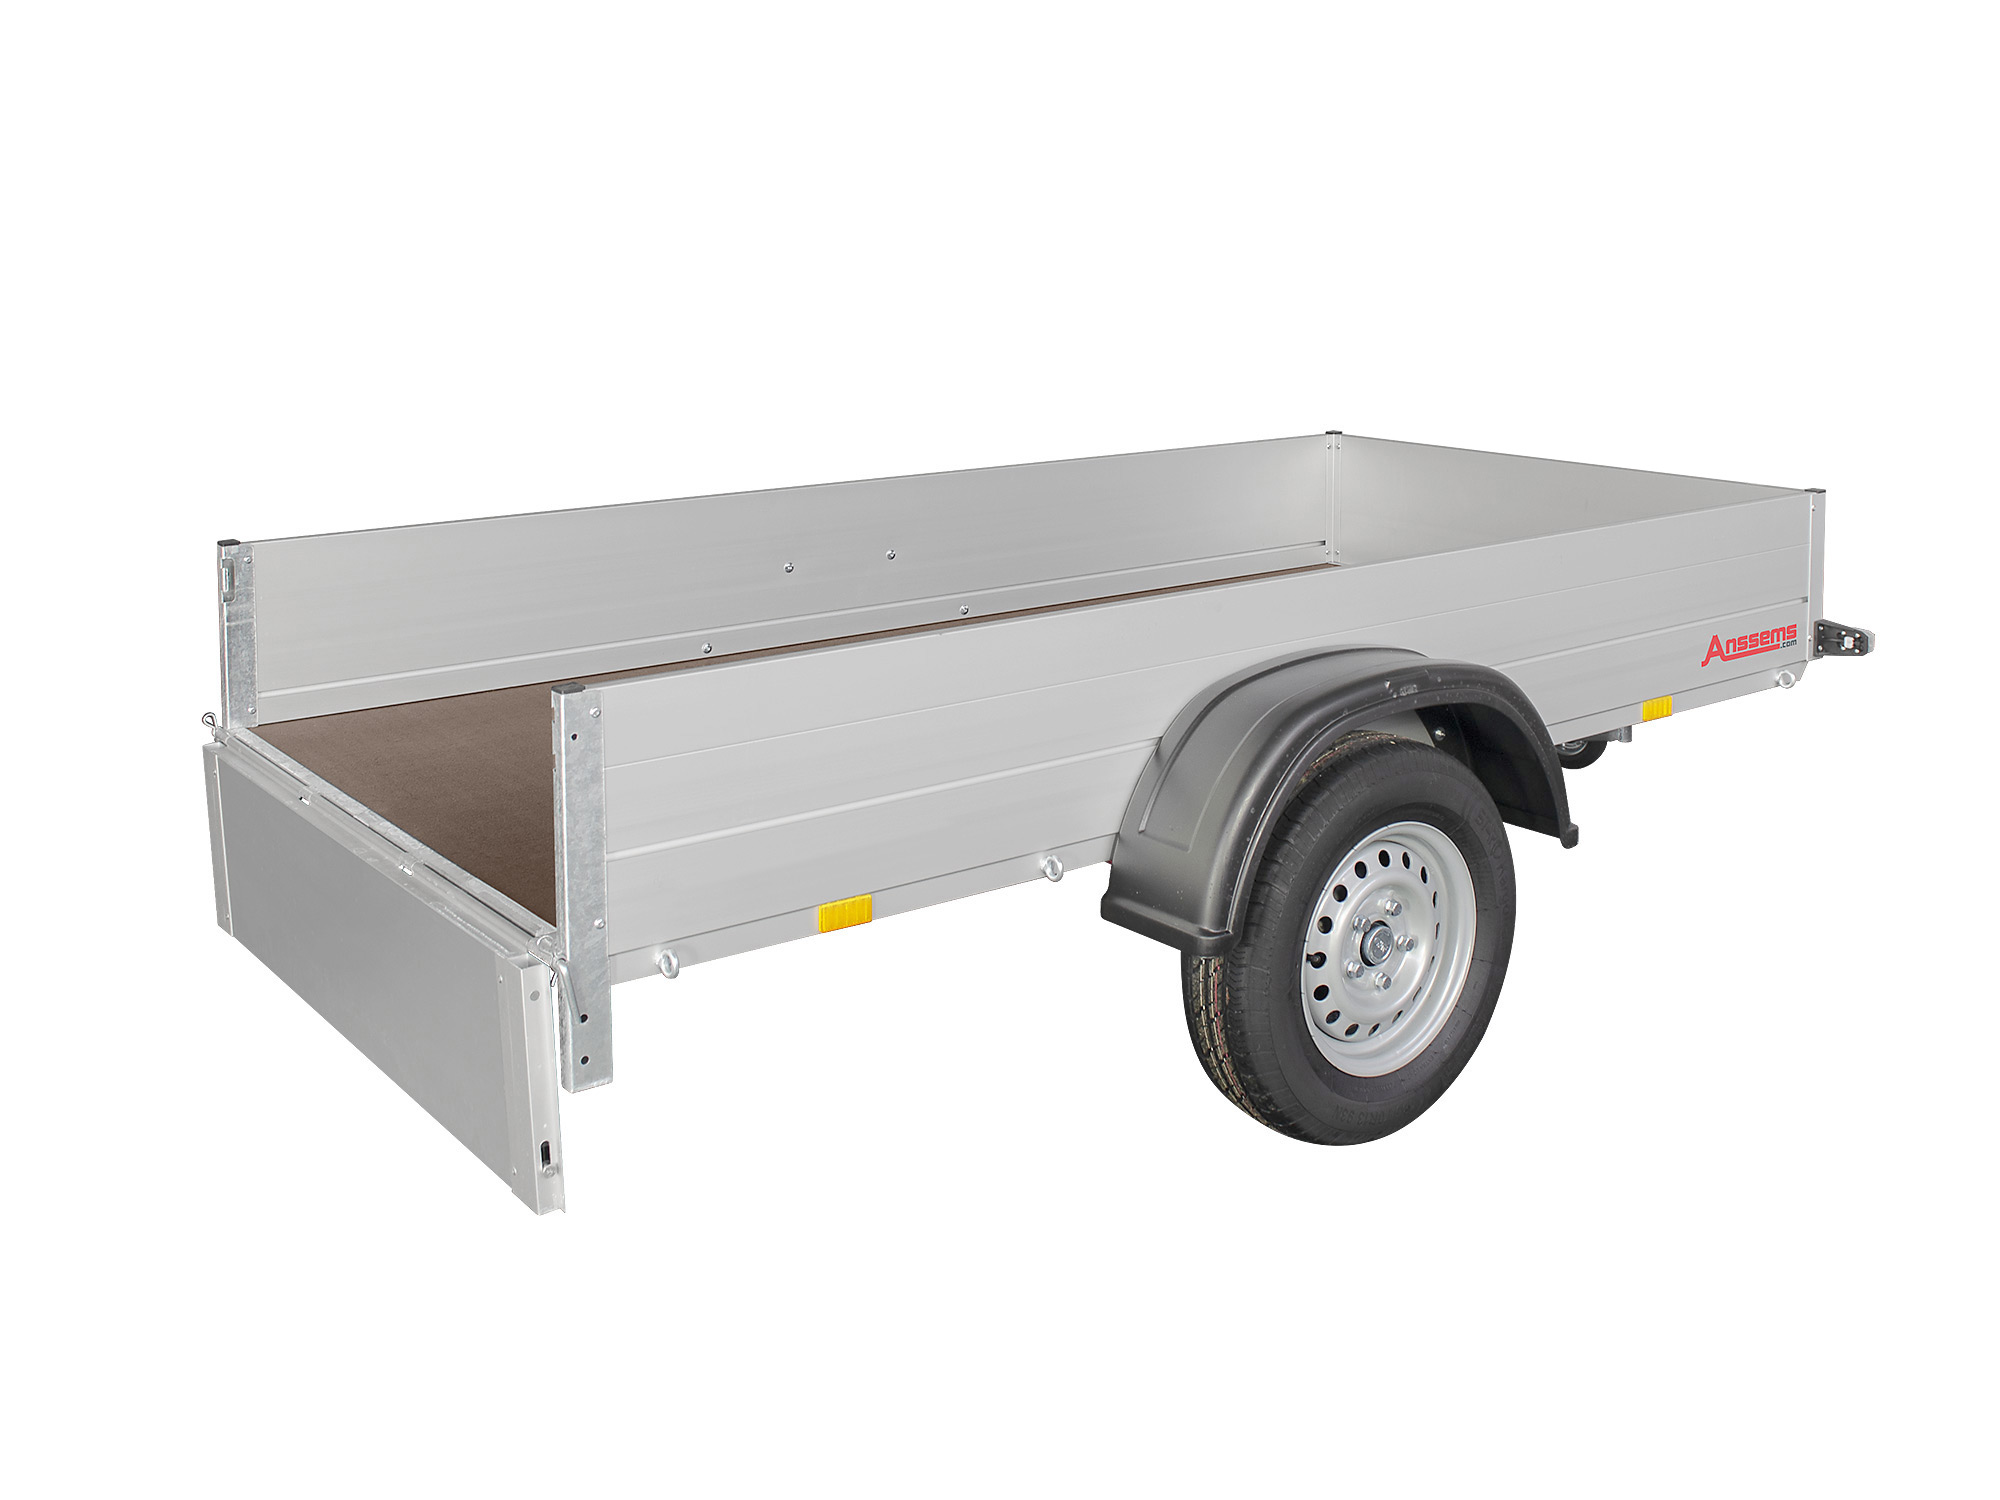 Anssems PKW Anhänger Tieflader Alu 500 kg, Ladefläche 1,51 x1,01 m